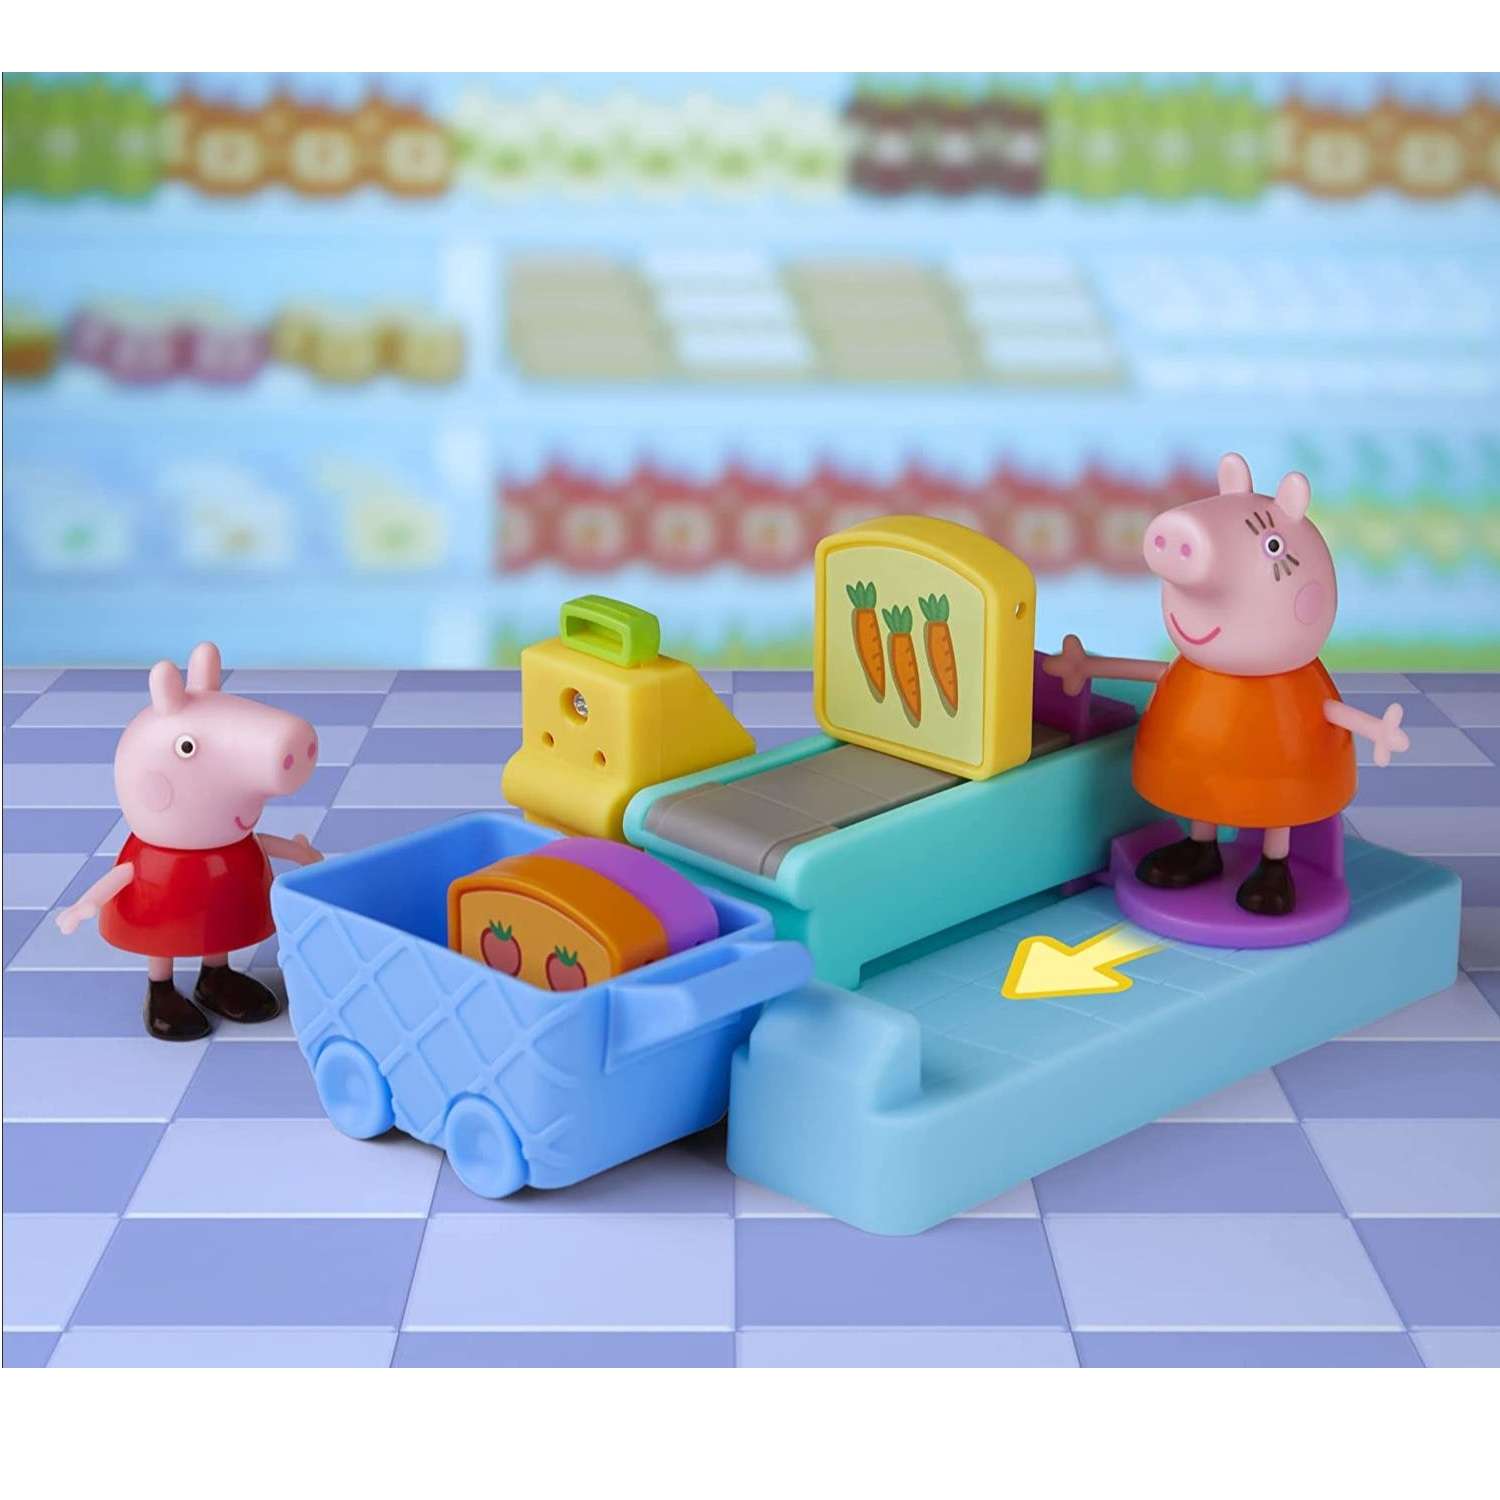 Набор игровой Peppa Pig Свинка Пеппа в магазине F44105X0 Свинка Пеппа - фото 2